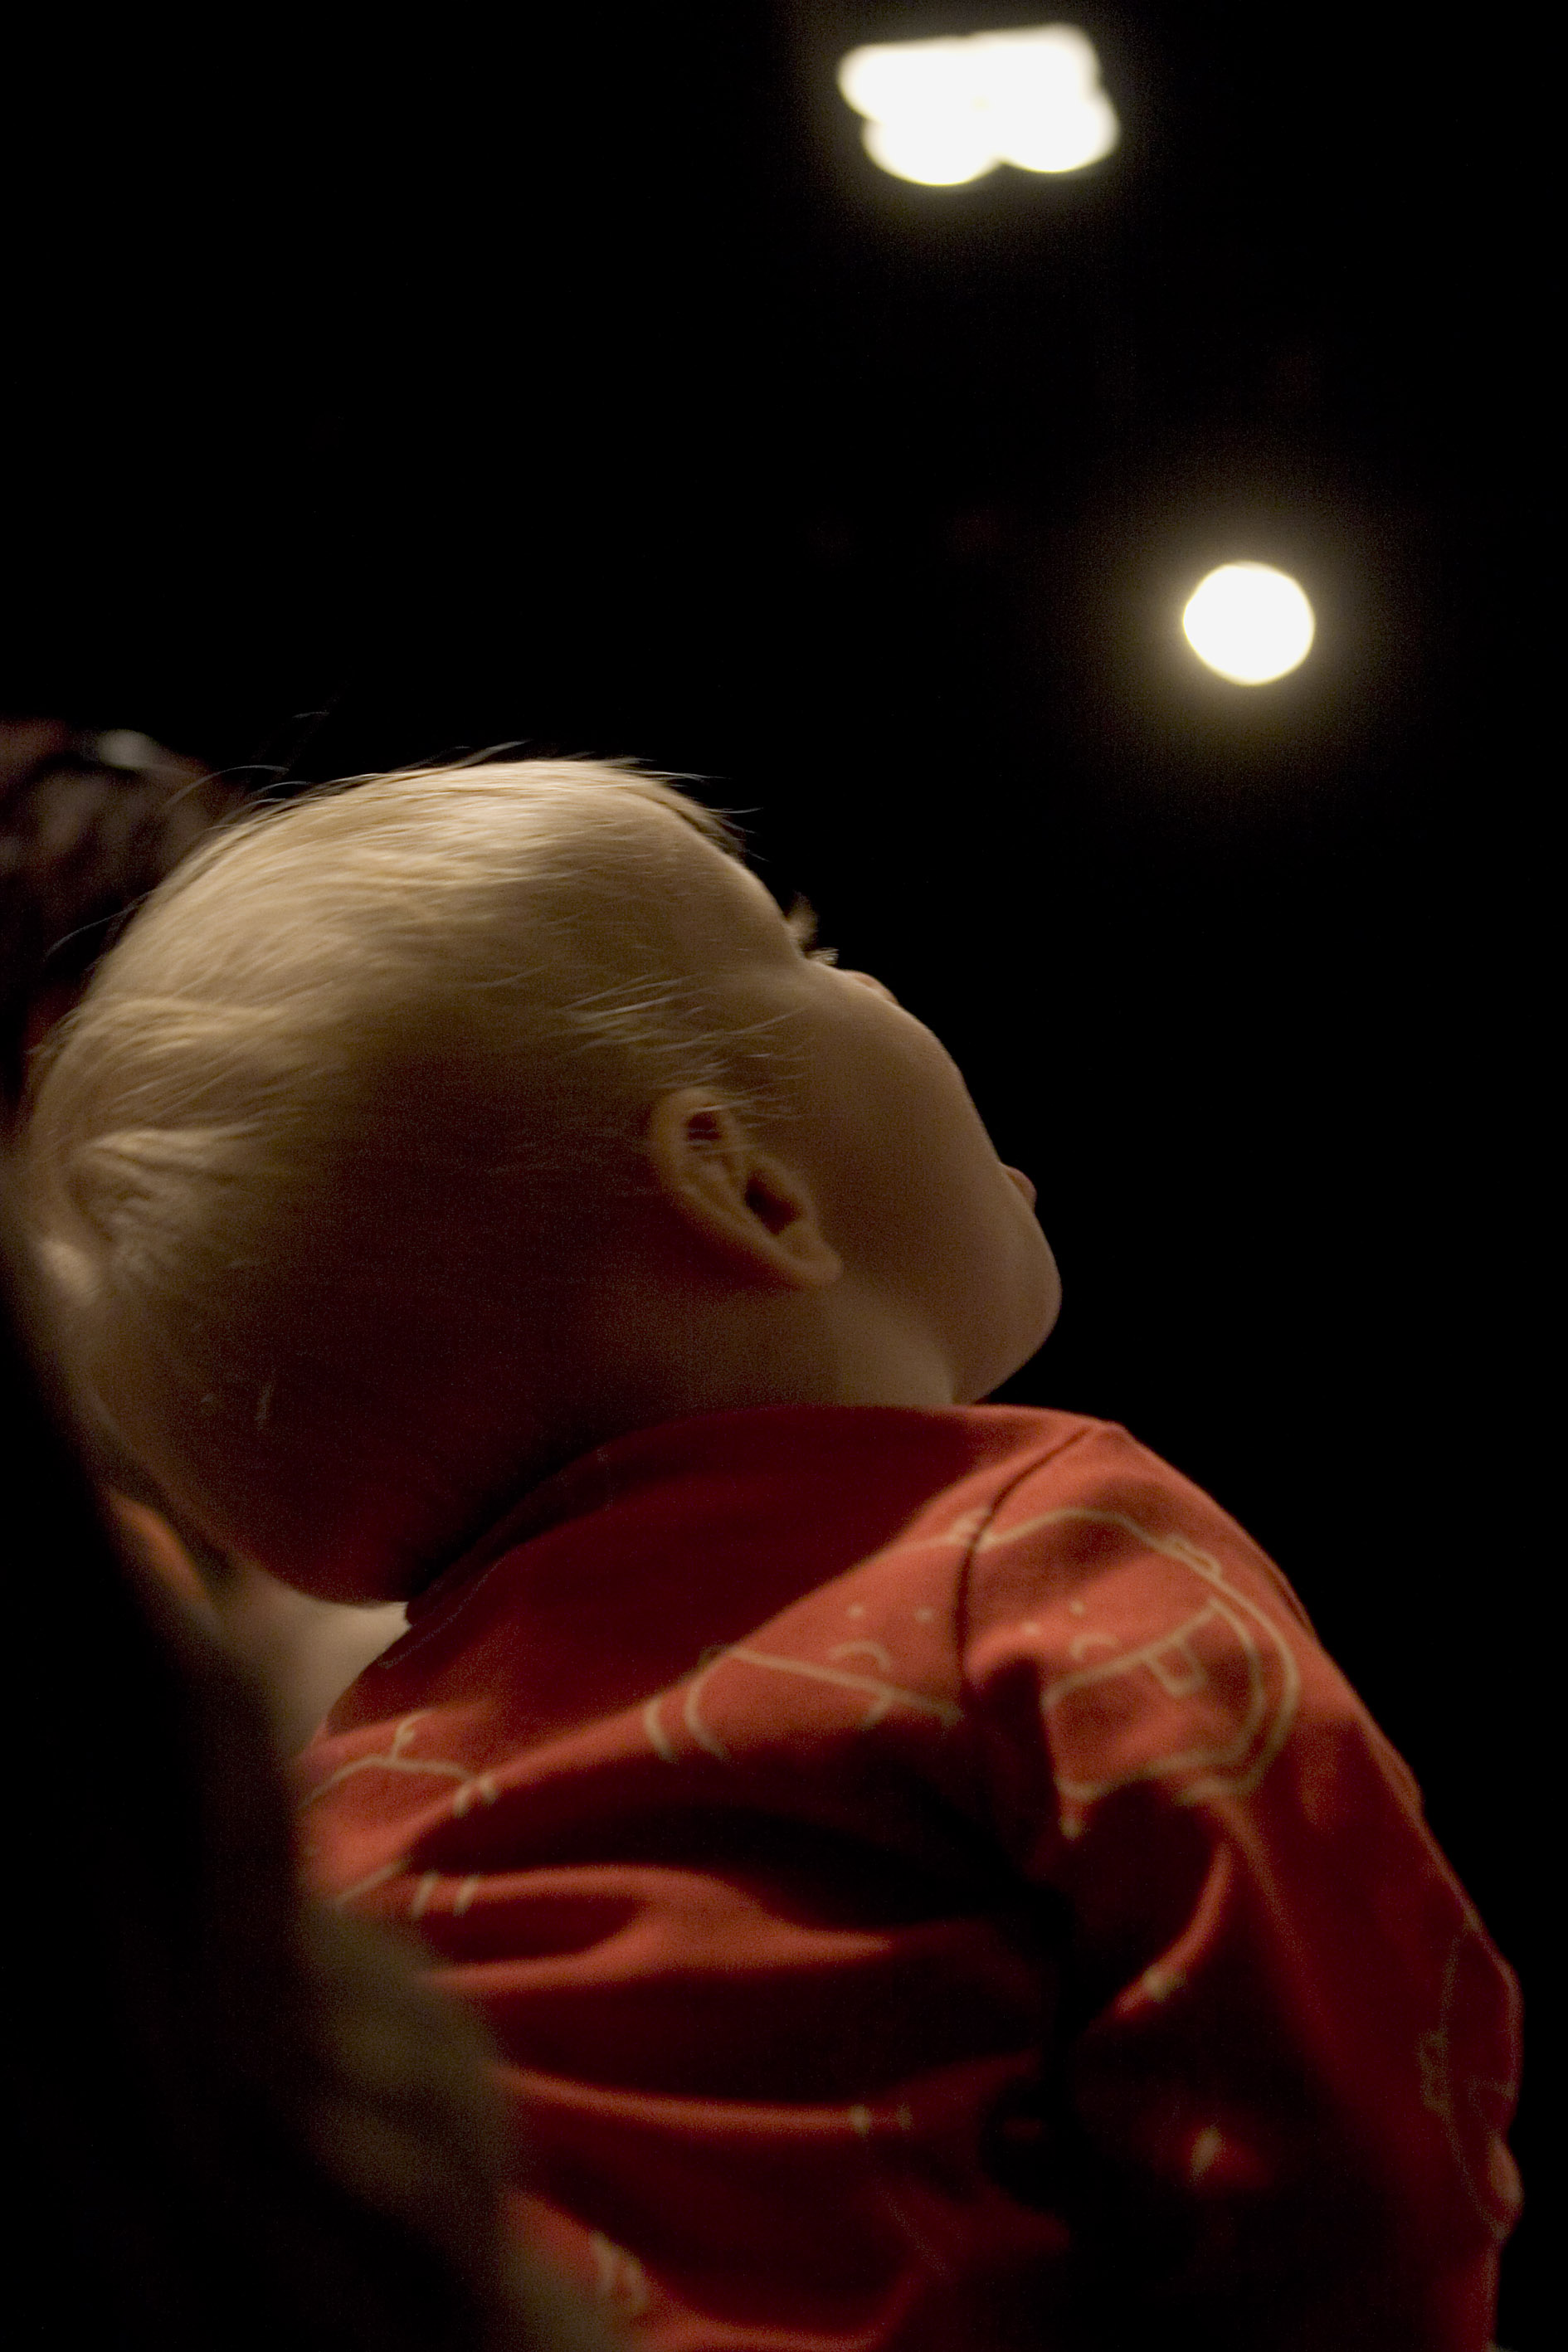 Föreställningsbild med publik från Babydrama på Unga Klara, Stockholms stadsteater